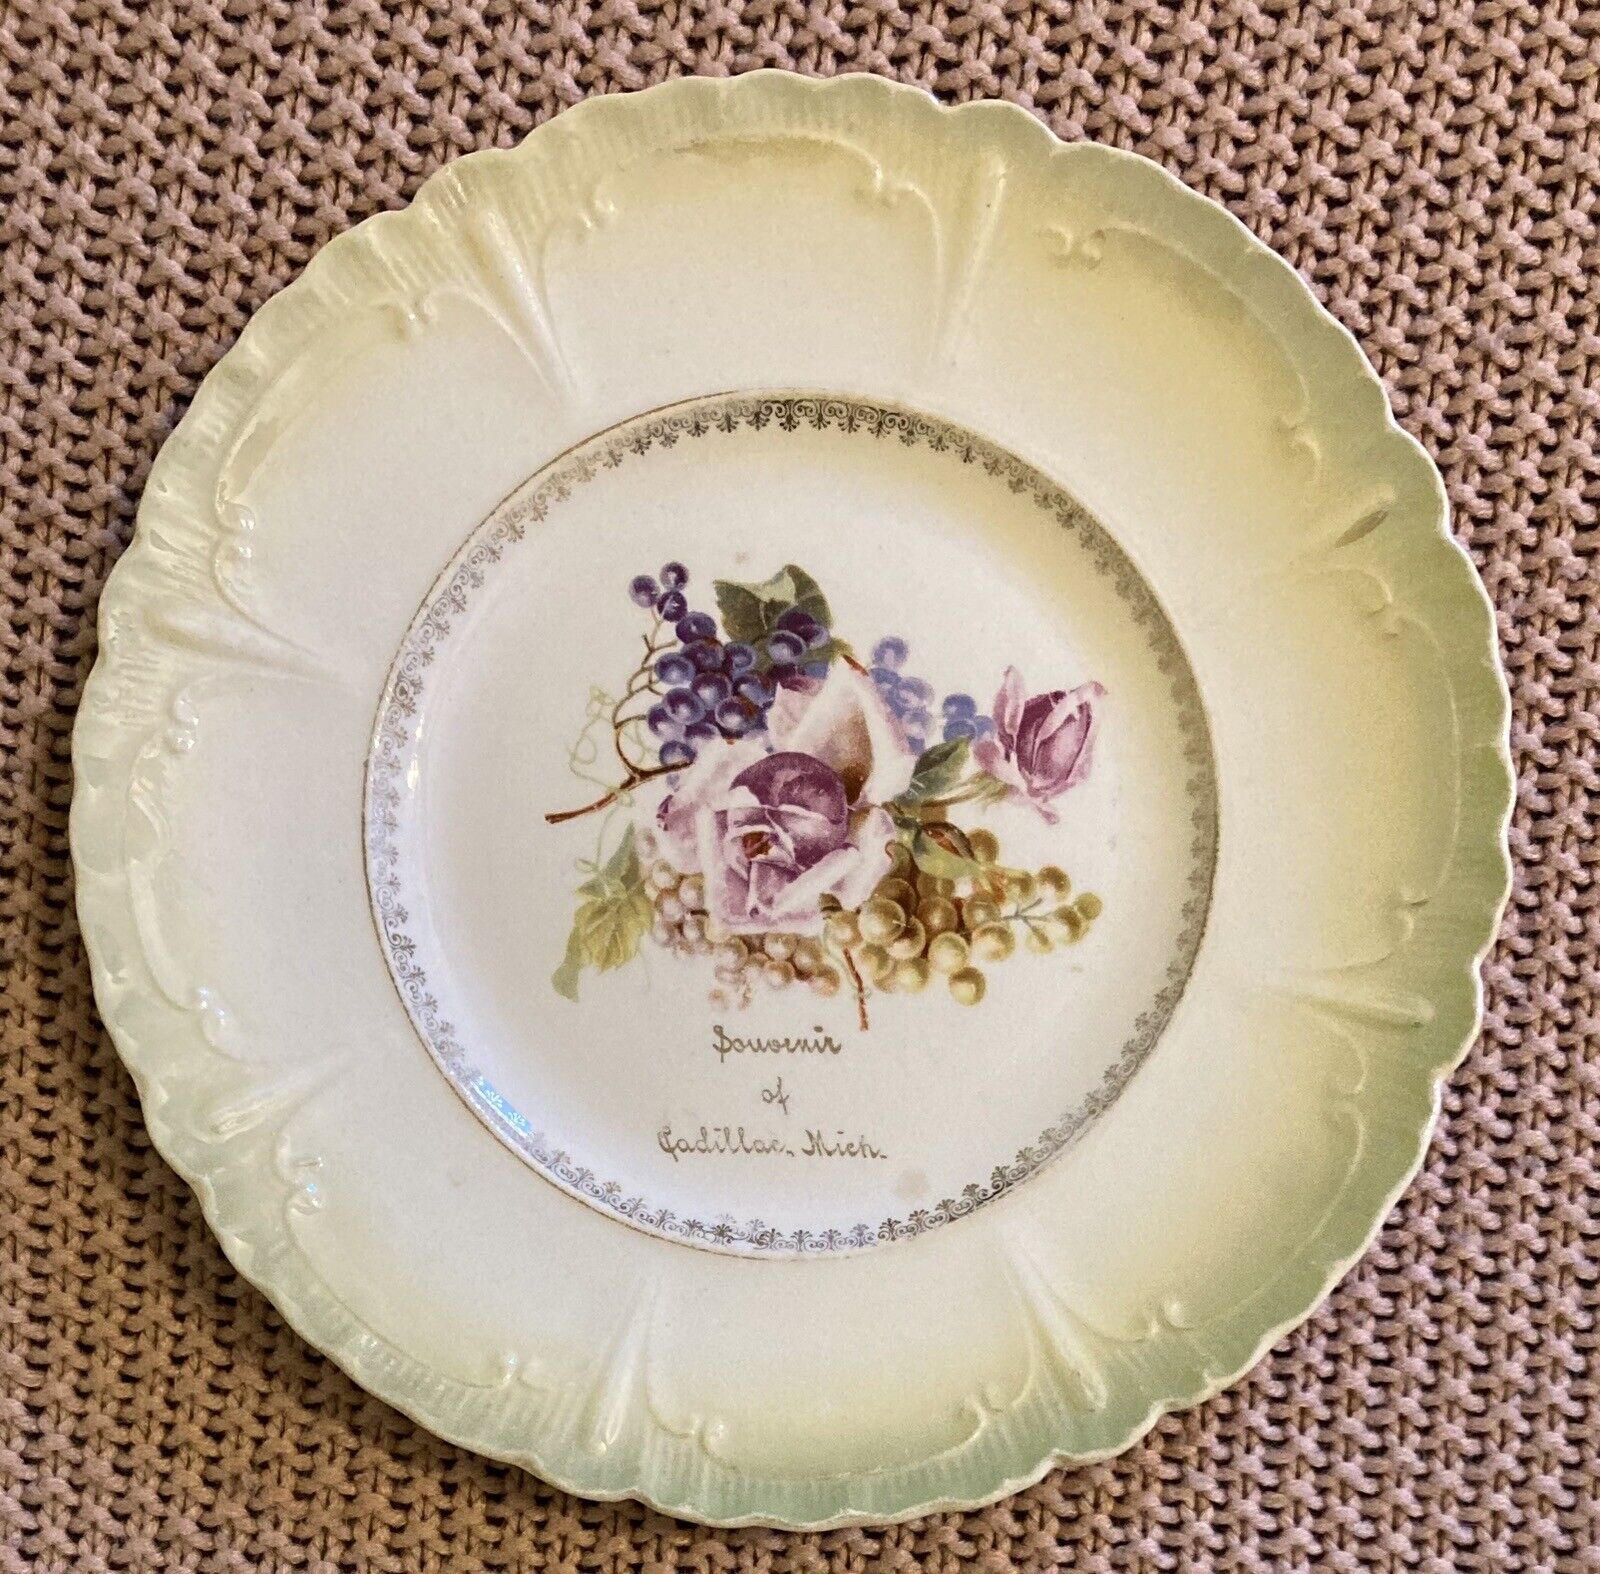 *VINTAGE* Souvenir Of Cadillac, Michigan Decorative Porcelain Plate Floral Fruit